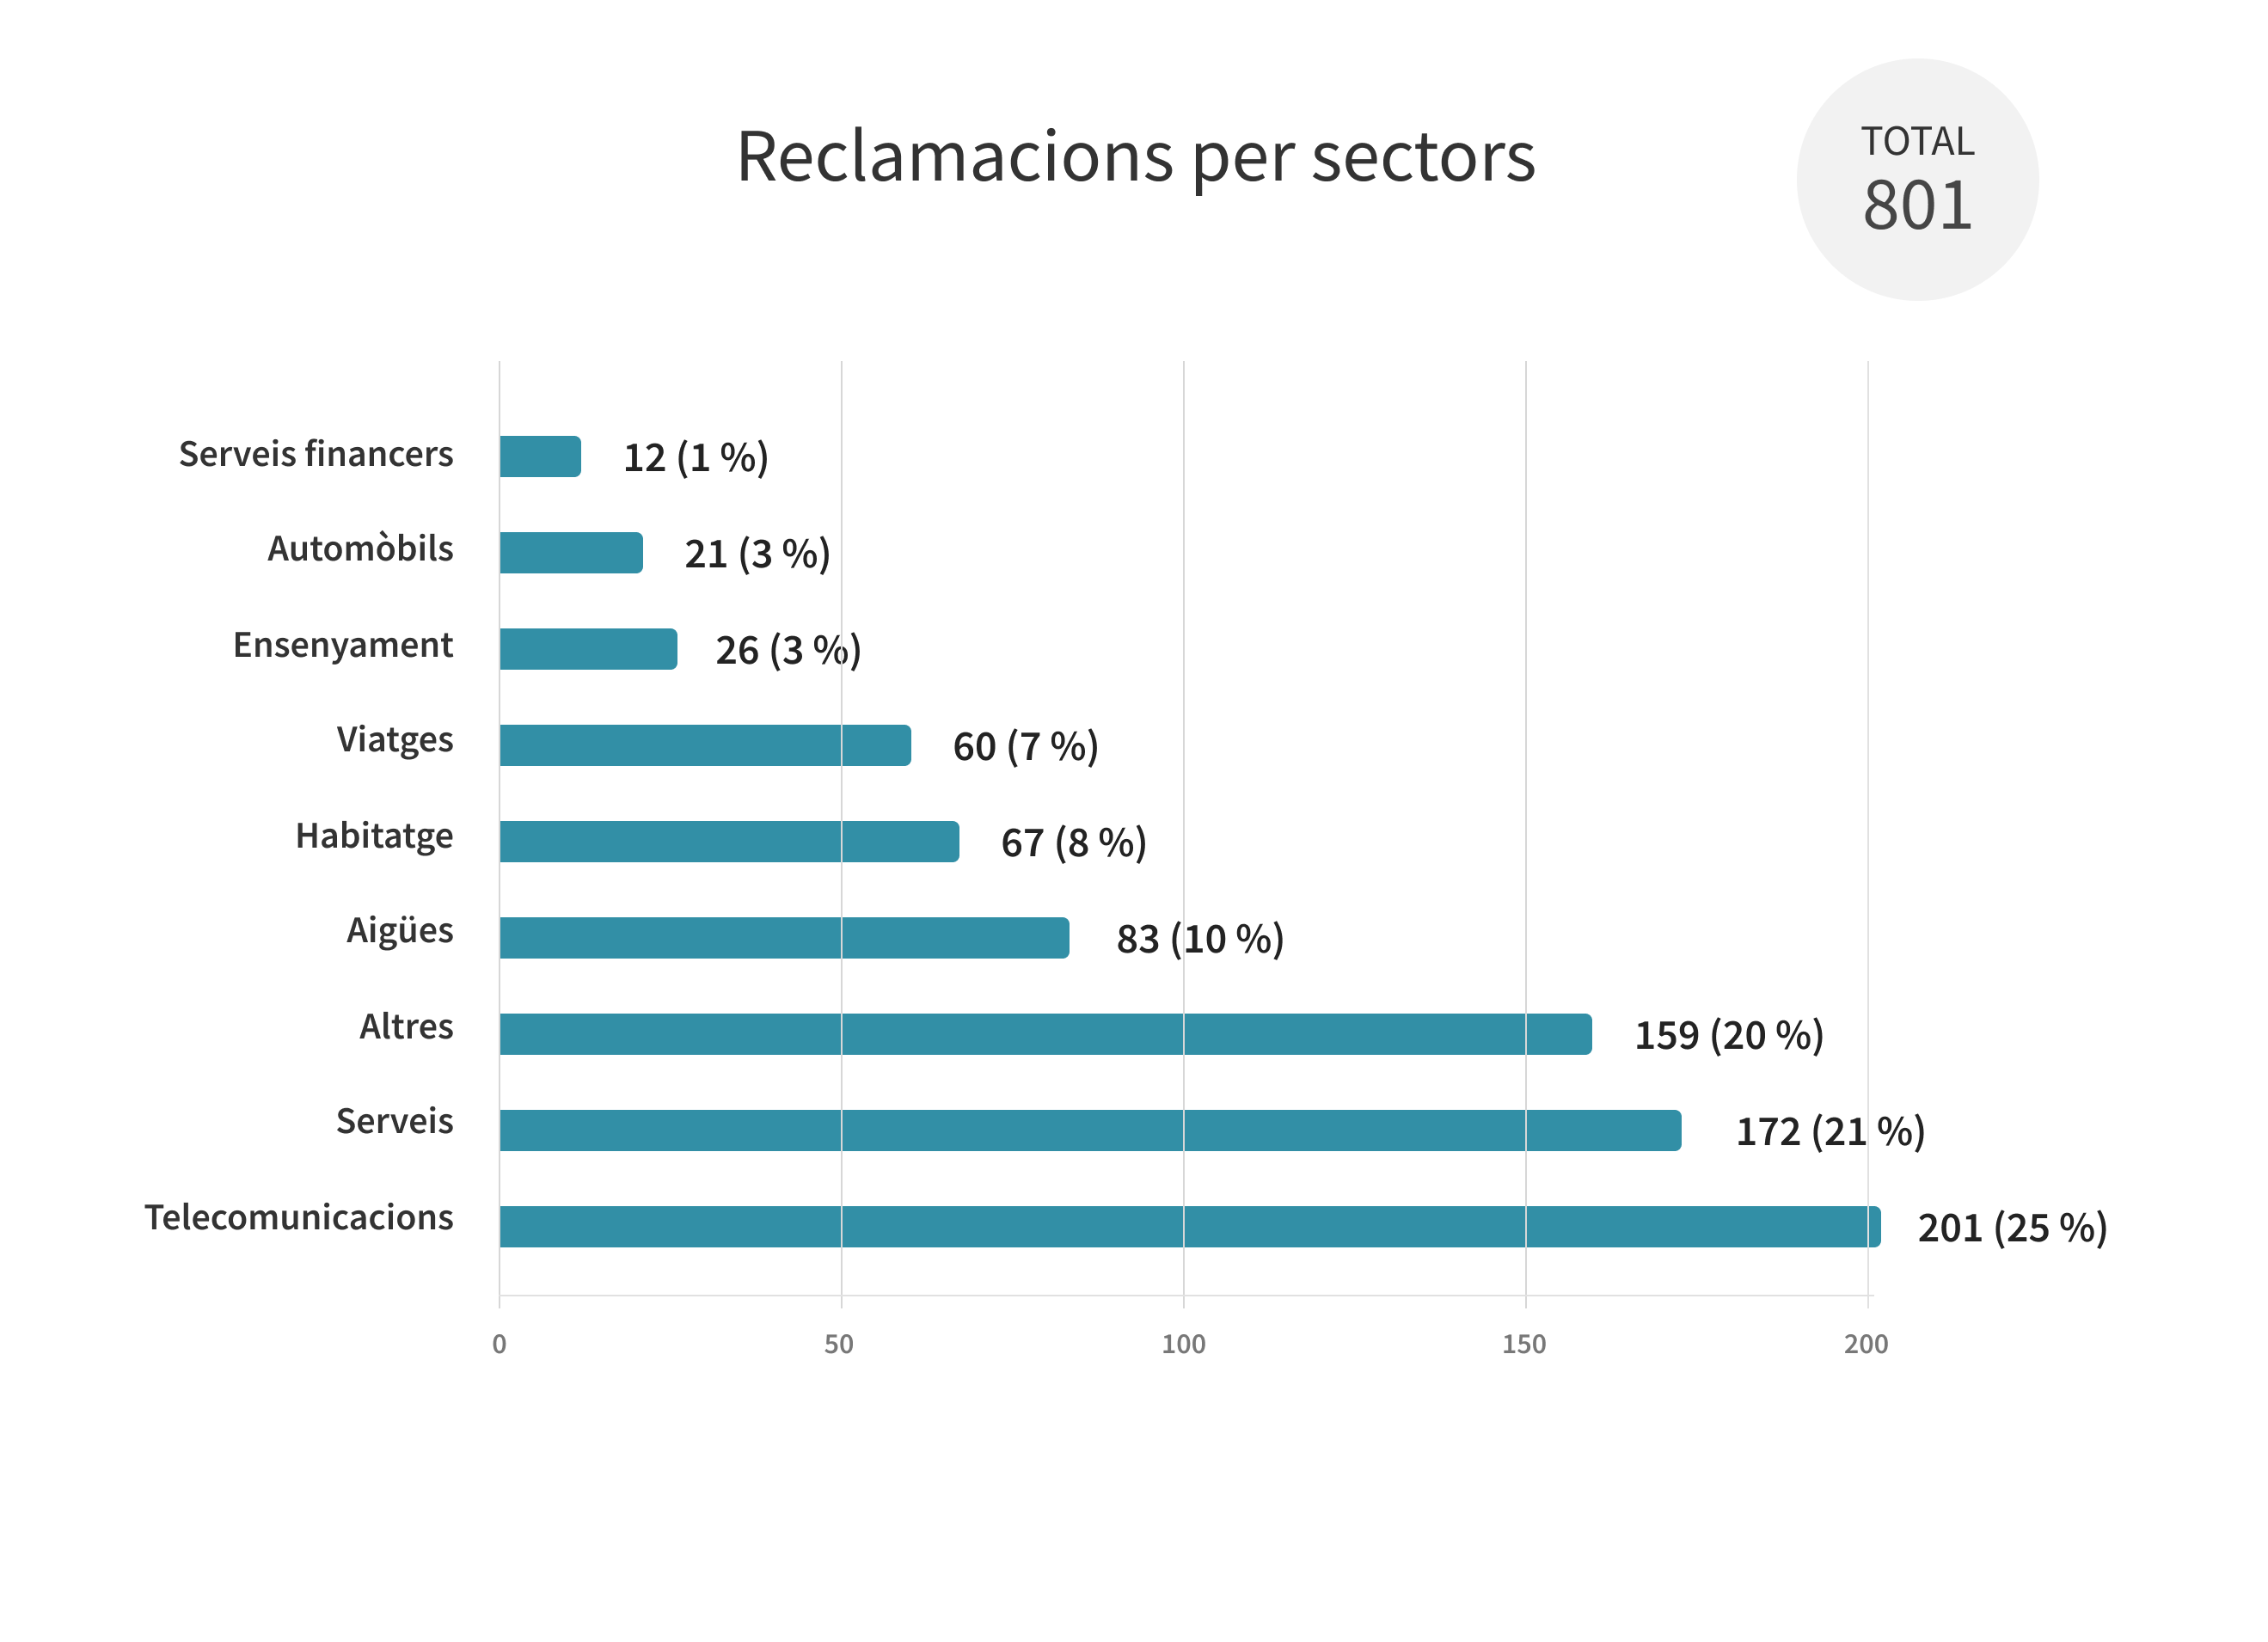 Reclamacions per sectors, Total: 801. Serveis financers: 12 (1 %), Automòbils: 21 (3 %), Ensenyament: 26 (3 %), Viatges: 60 (7 %), Habitatge: 67 (8 %), Aigües: 83 (10 %), Altres: 159 (20 %), Serveis: 172 (21 %), Telecomunicacions: 201 (25 %)